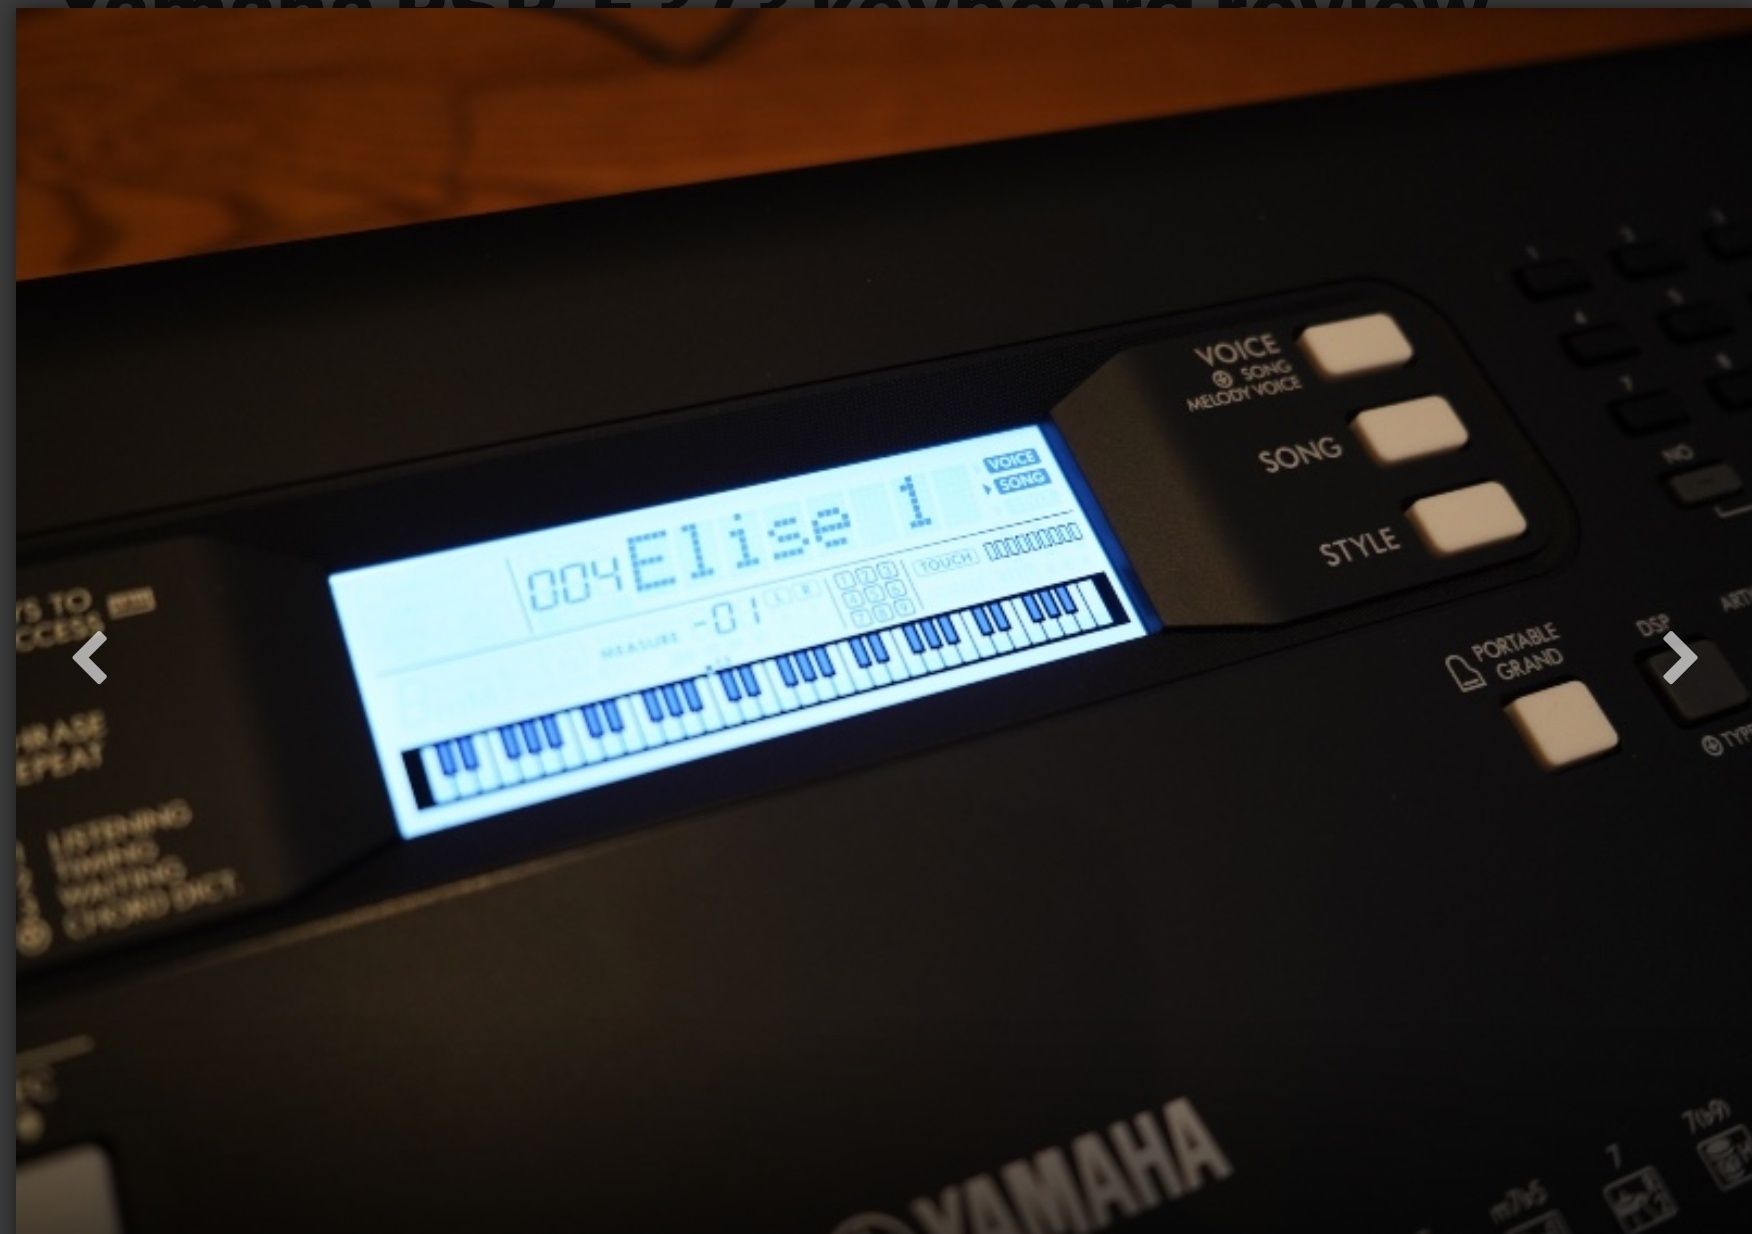 Keyboard Yamaha PSR-E373
Yamaha PSR-E373